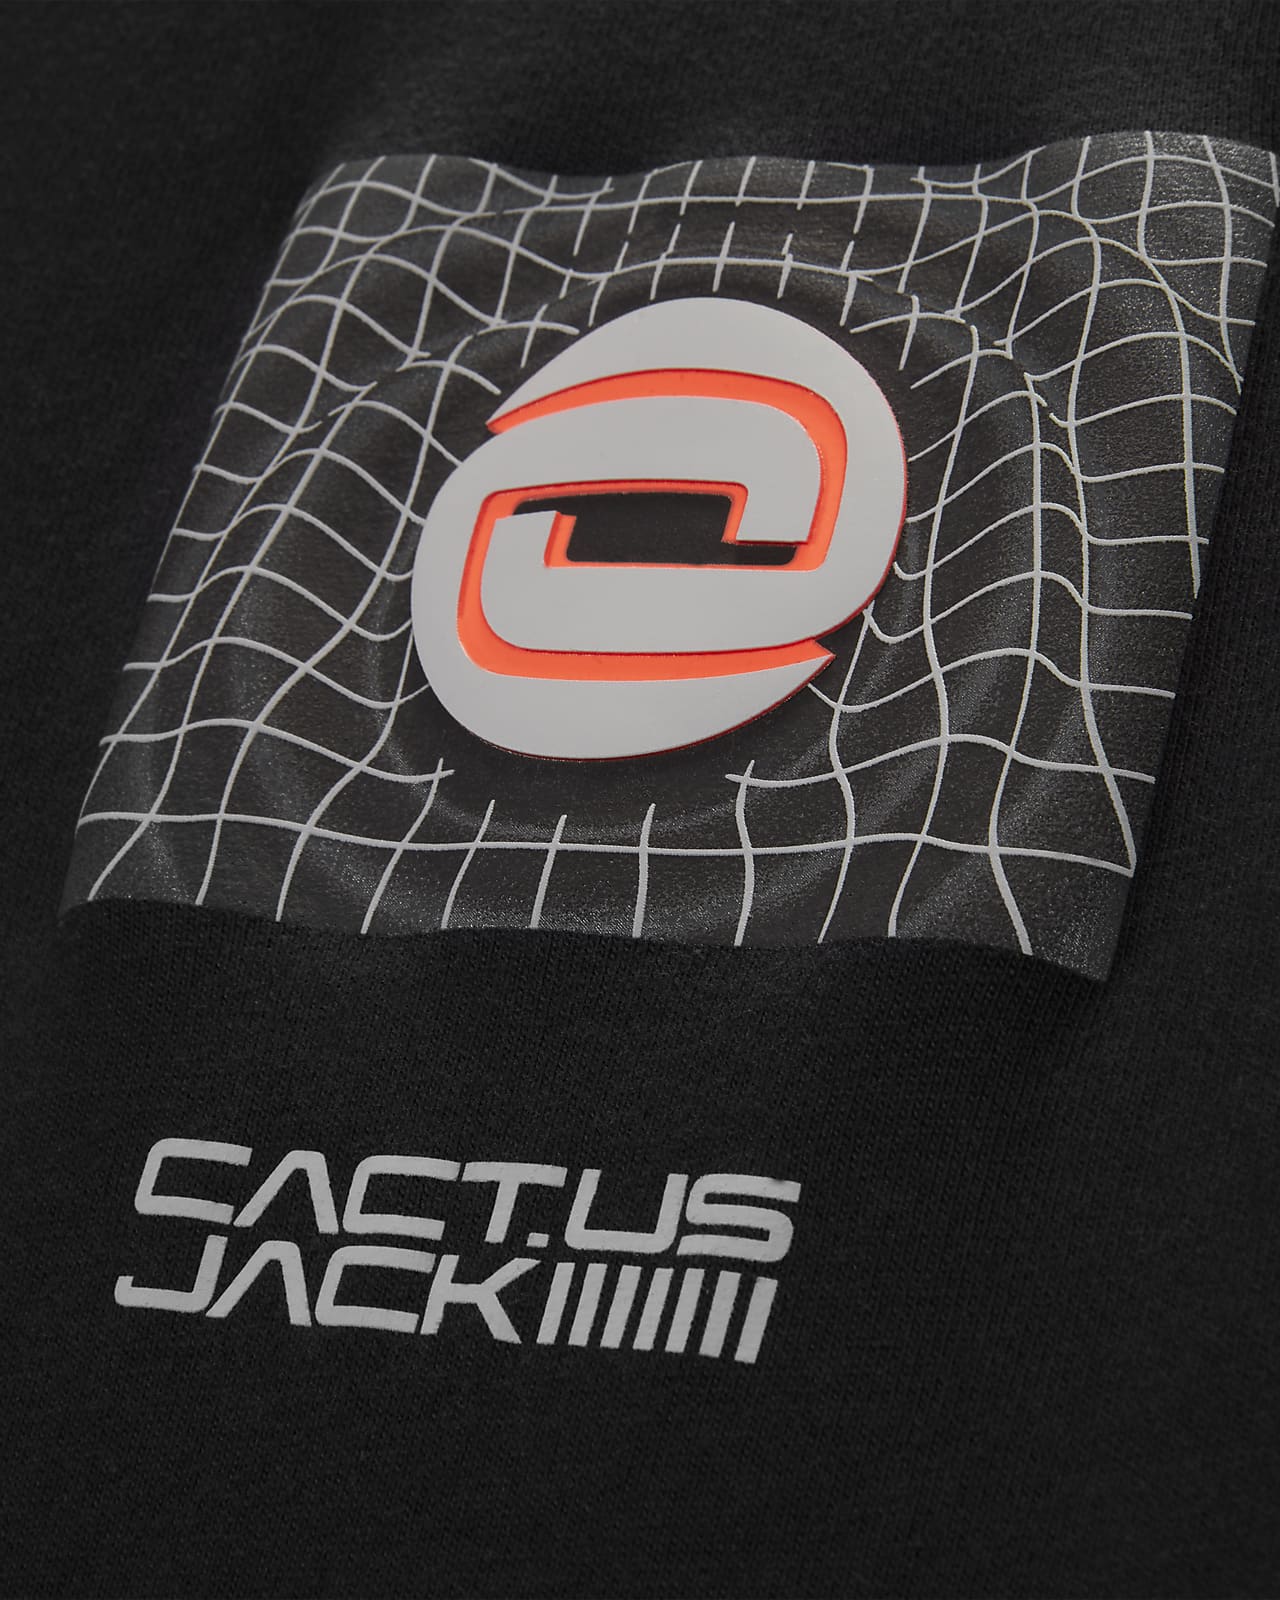 NIKE TRAVIS SCOTT Cactus Jack Tシャツ